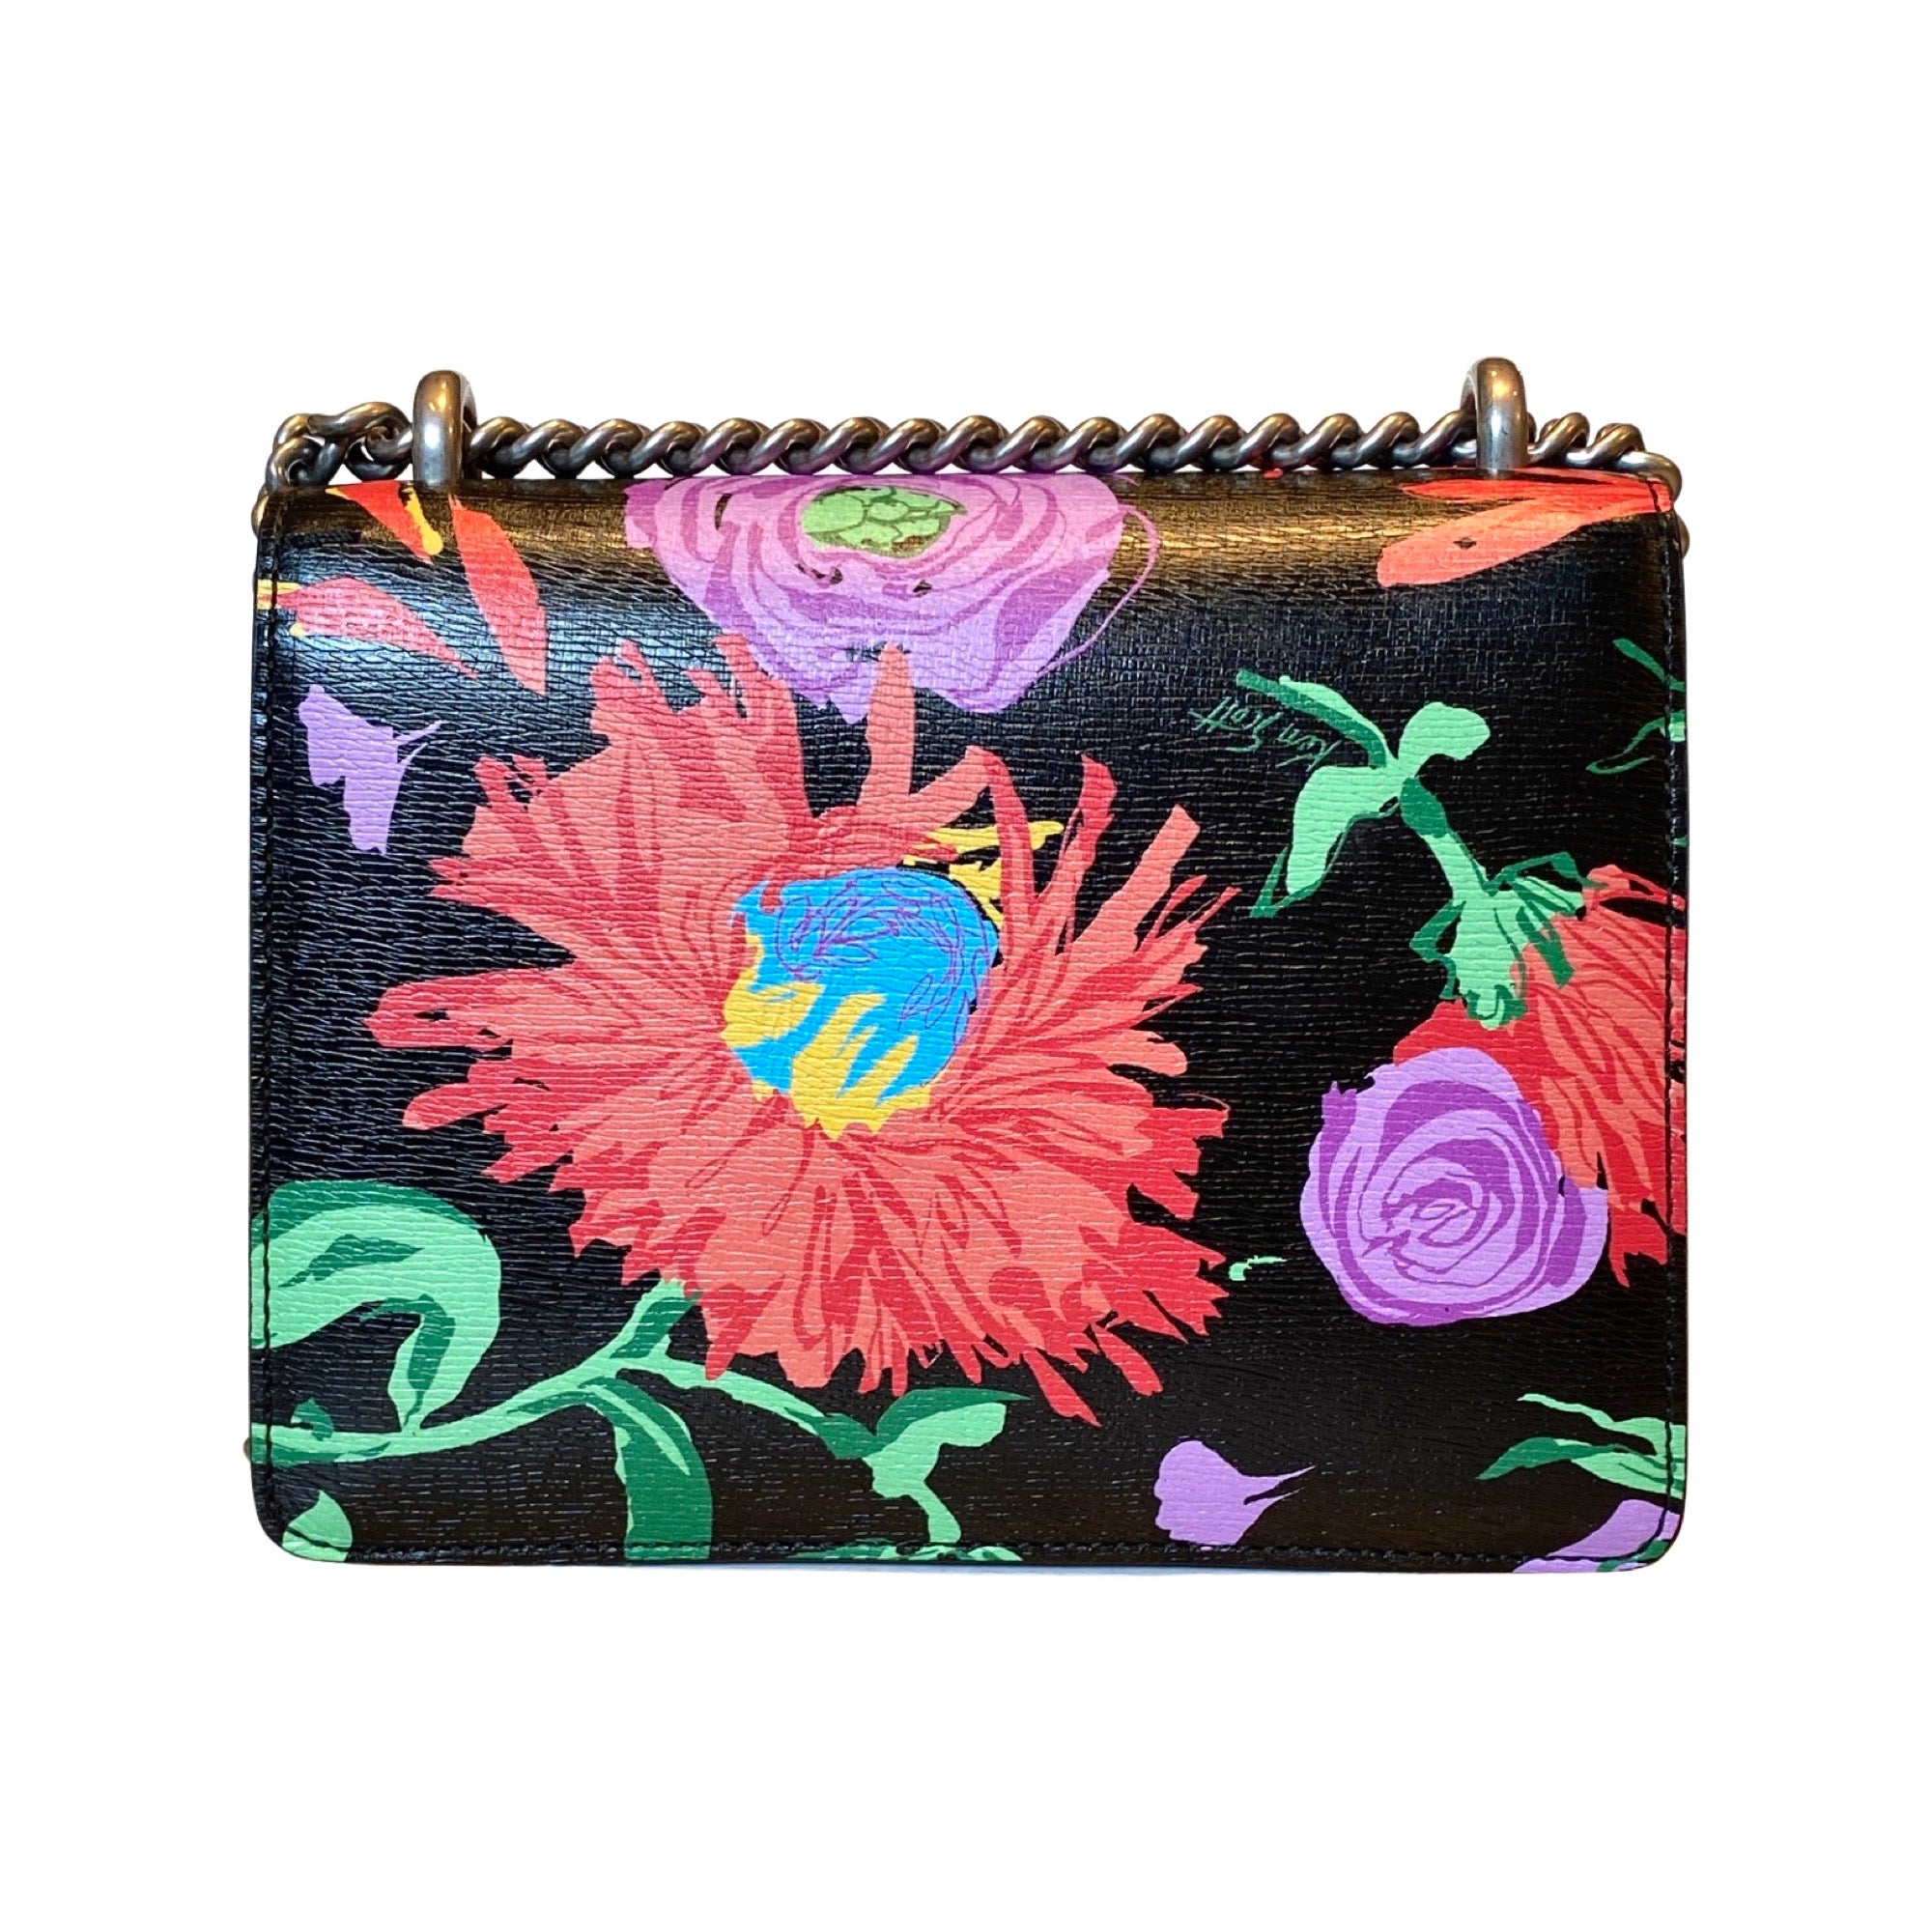 Gucci x Ken Scott Dionysus Floral Print Small Shoulder Bag